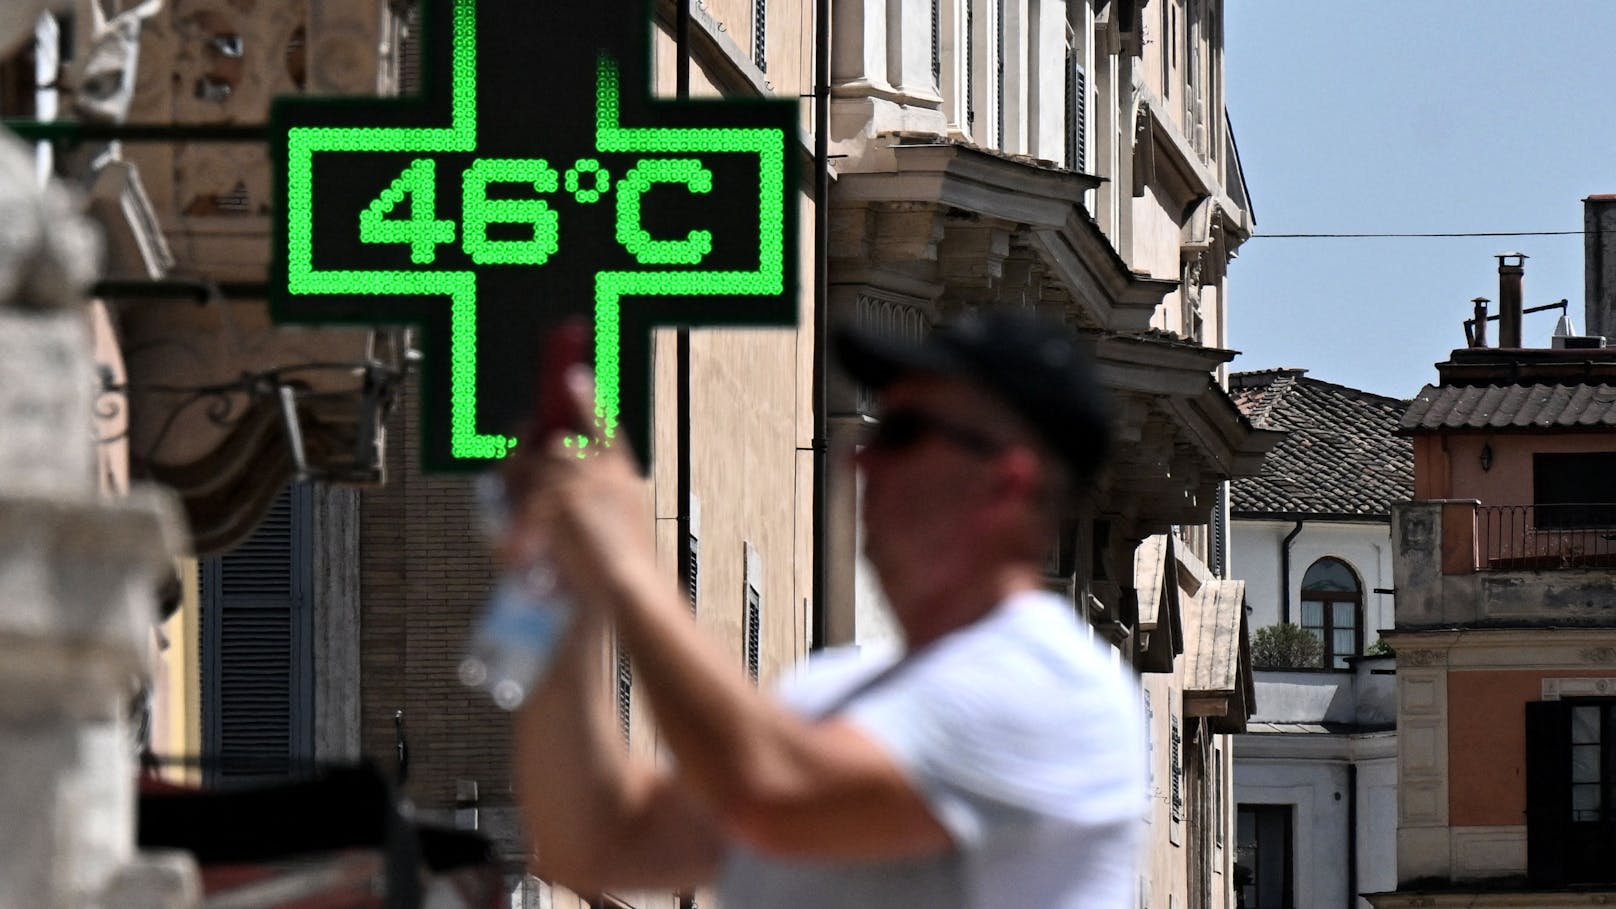 Eine Hitzewelle hat Mitte Juli die italienische Hauptstadt Rom voll erfasst. Eine Apotheke an der Spanische Treppe zeigte auf ihrem Schild sogar 46 Grad.